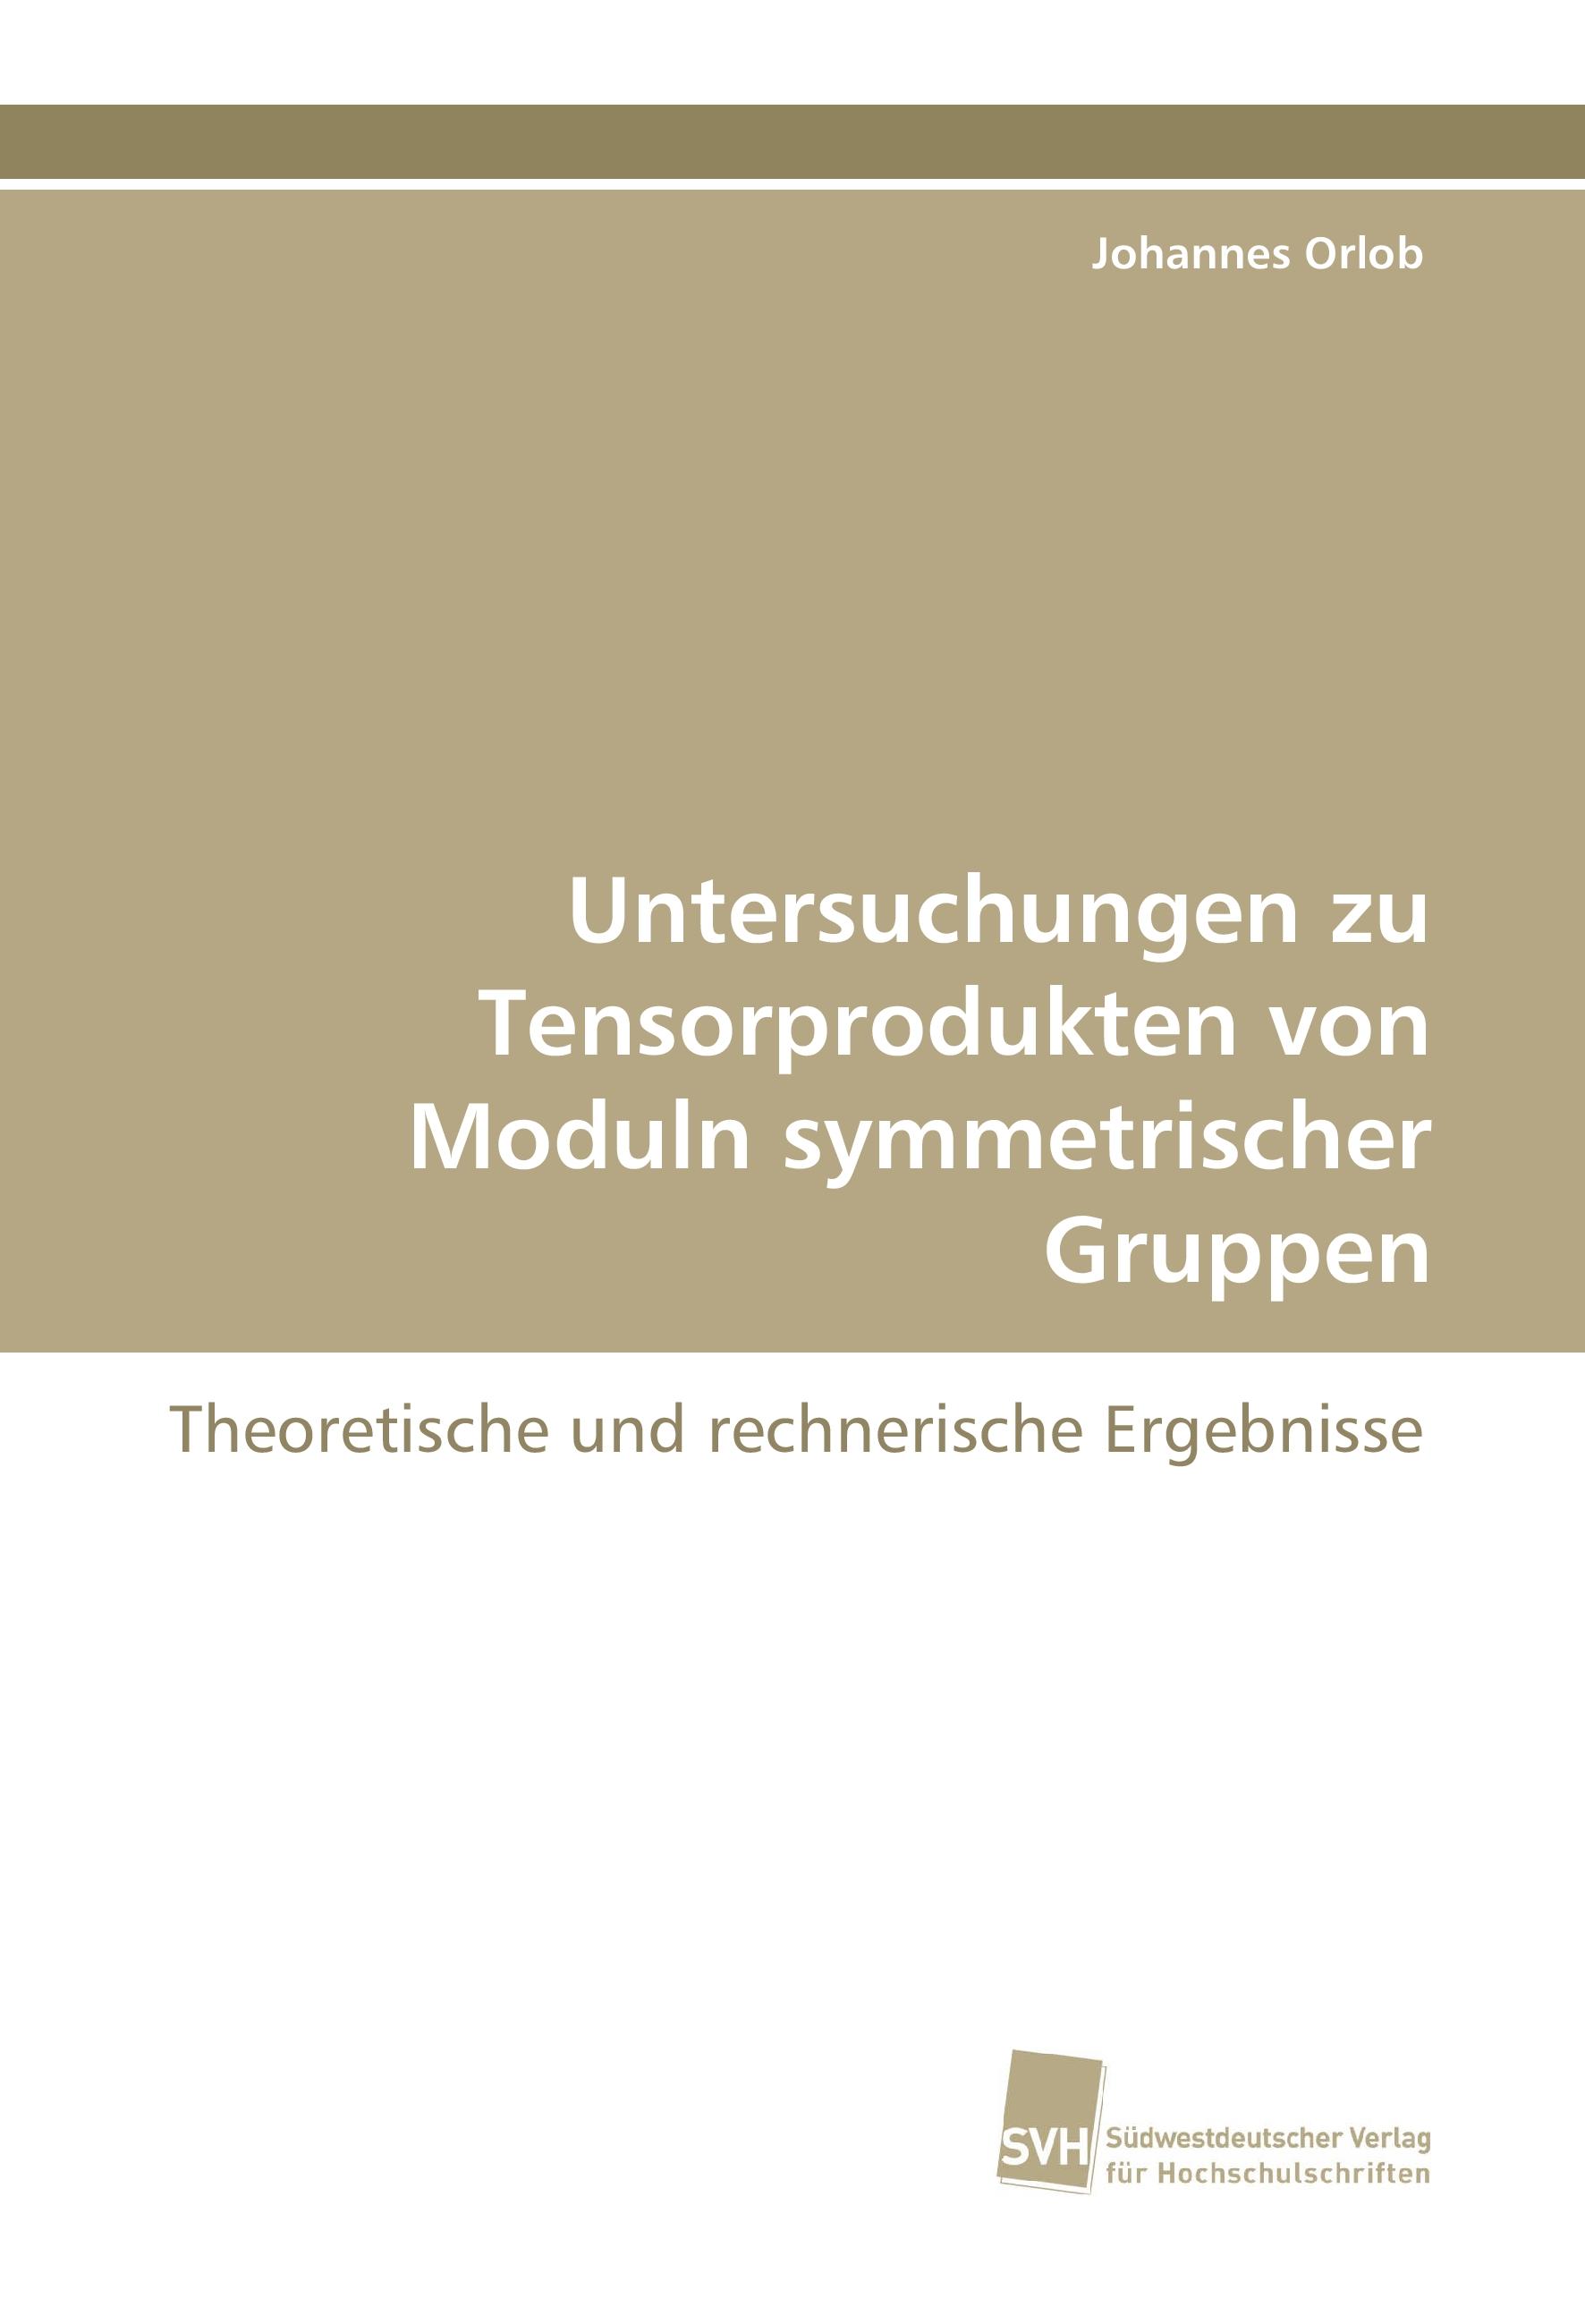 Untersuchungen zu Tensorprodukten von Moduln symmetrischer Gruppen - Johannes Orlob